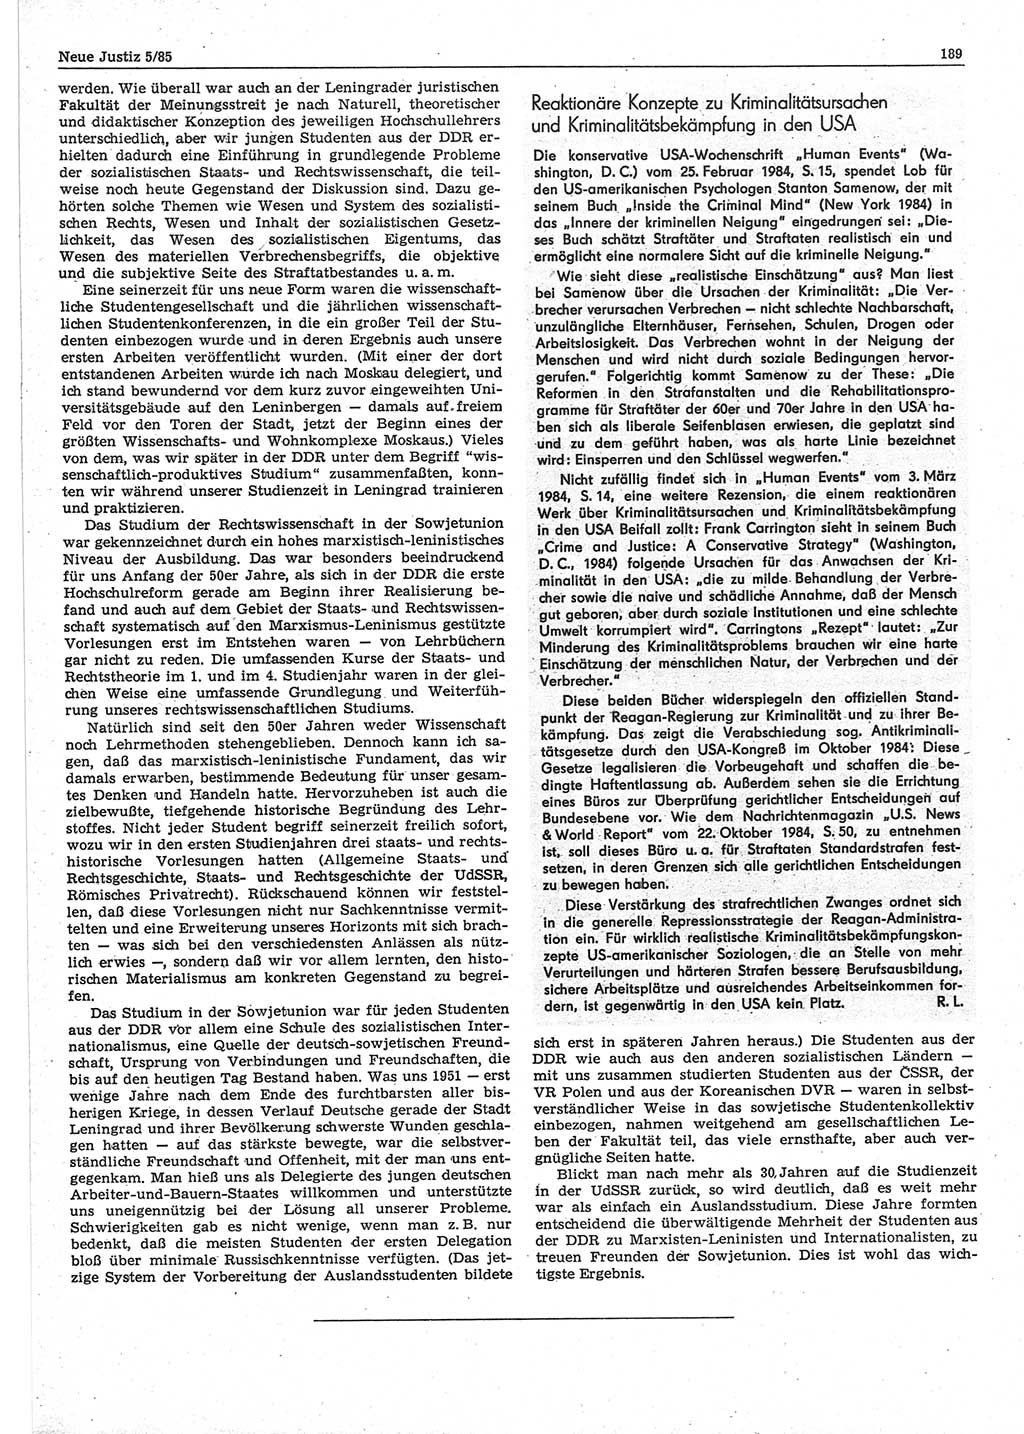 Neue Justiz (NJ), Zeitschrift für sozialistisches Recht und Gesetzlichkeit [Deutsche Demokratische Republik (DDR)], 39. Jahrgang 1985, Seite 189 (NJ DDR 1985, S. 189)